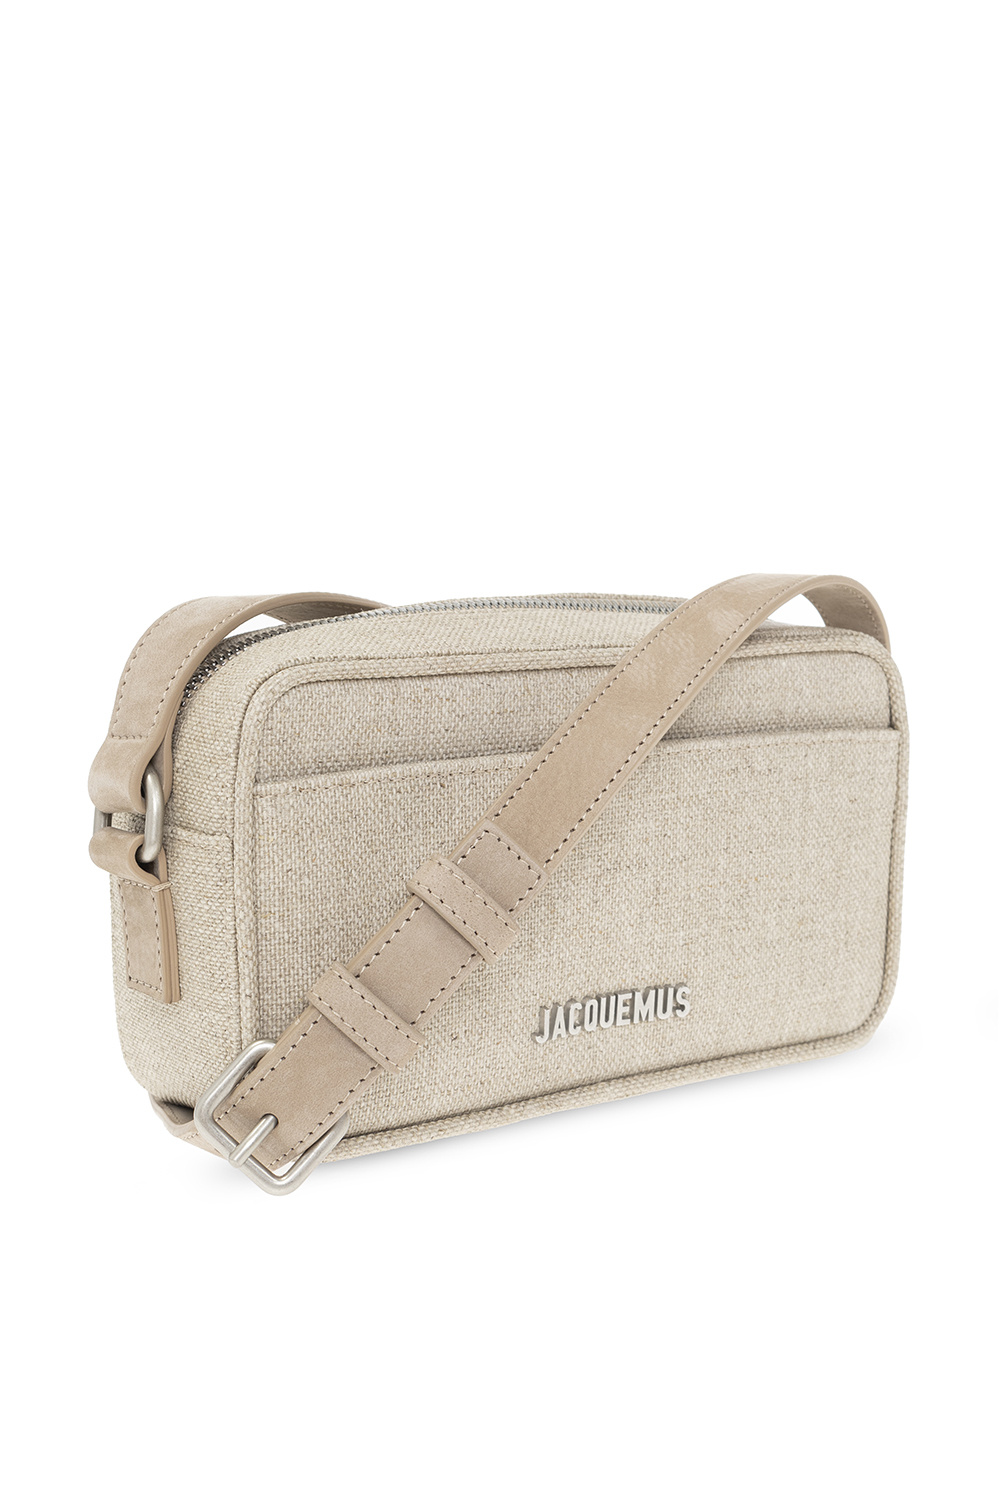 Jacquemus ‘Le Baneto’ shoulder Hulme bag